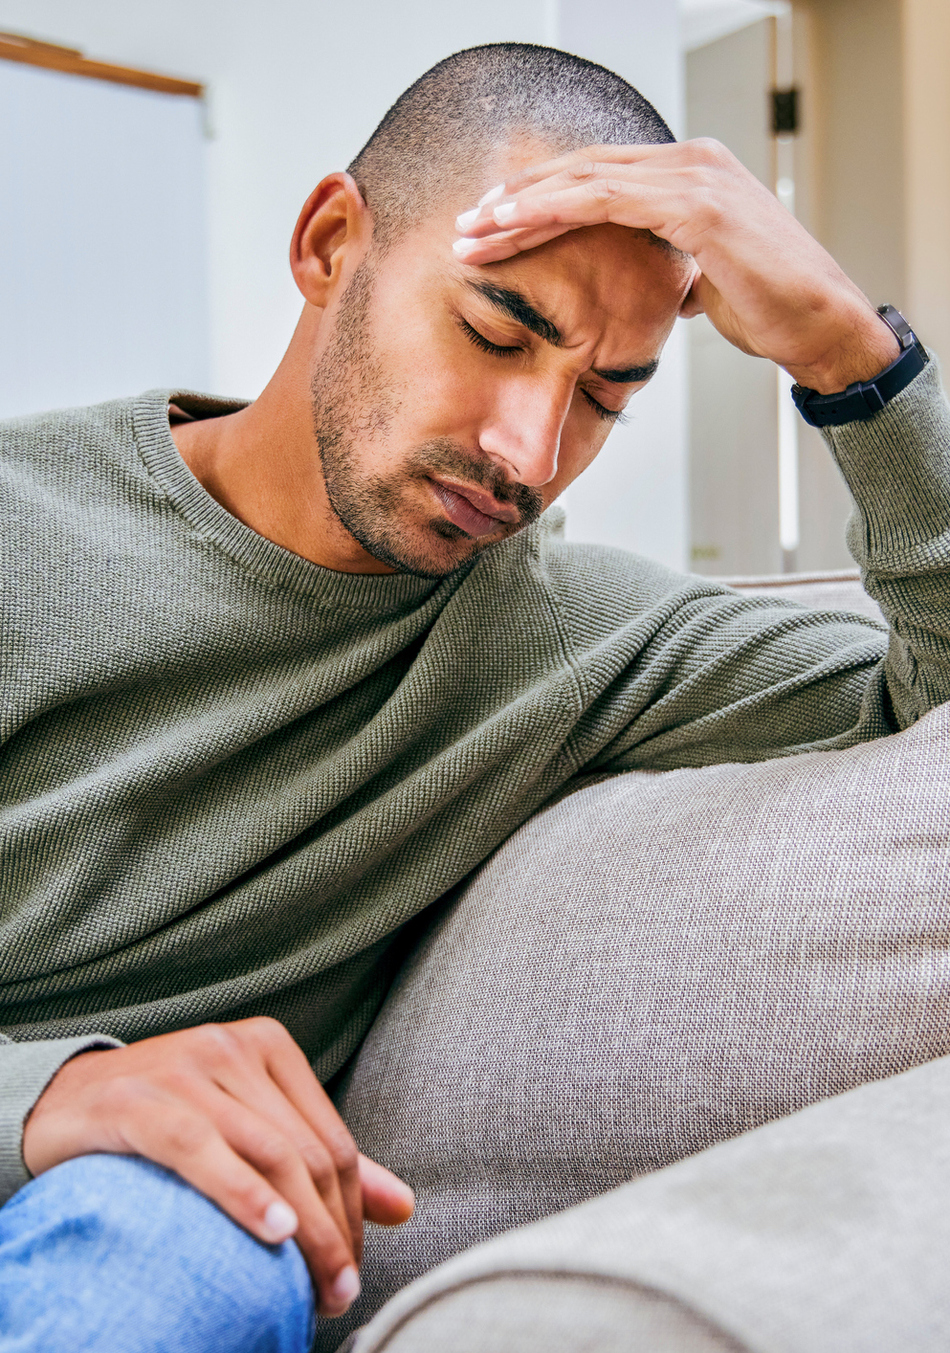 ER or Not: Sudden Severe Headache